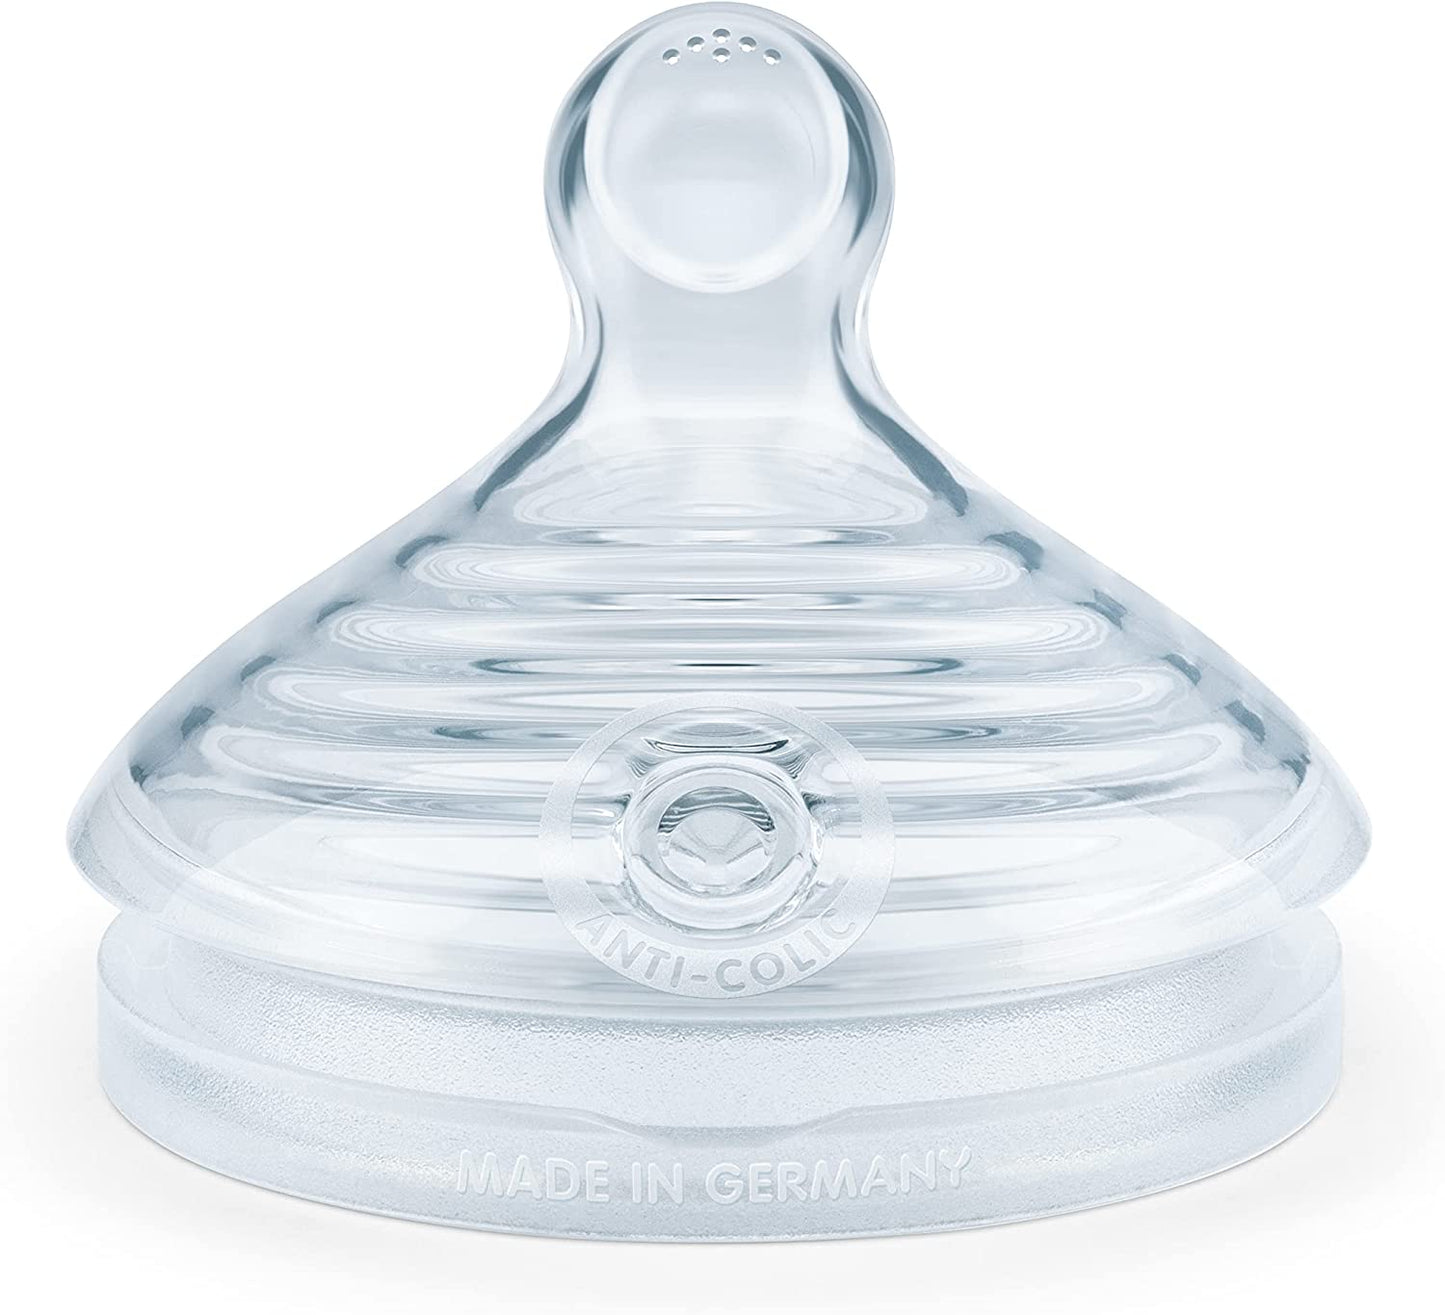 NUK para Nature de reposição mamadeiras| Médio | 6-18 Meses | Silicone sustentável semelhante a um seio com ventilação anti-cólica | Livre de BPA | 2 Contagem, Limpar